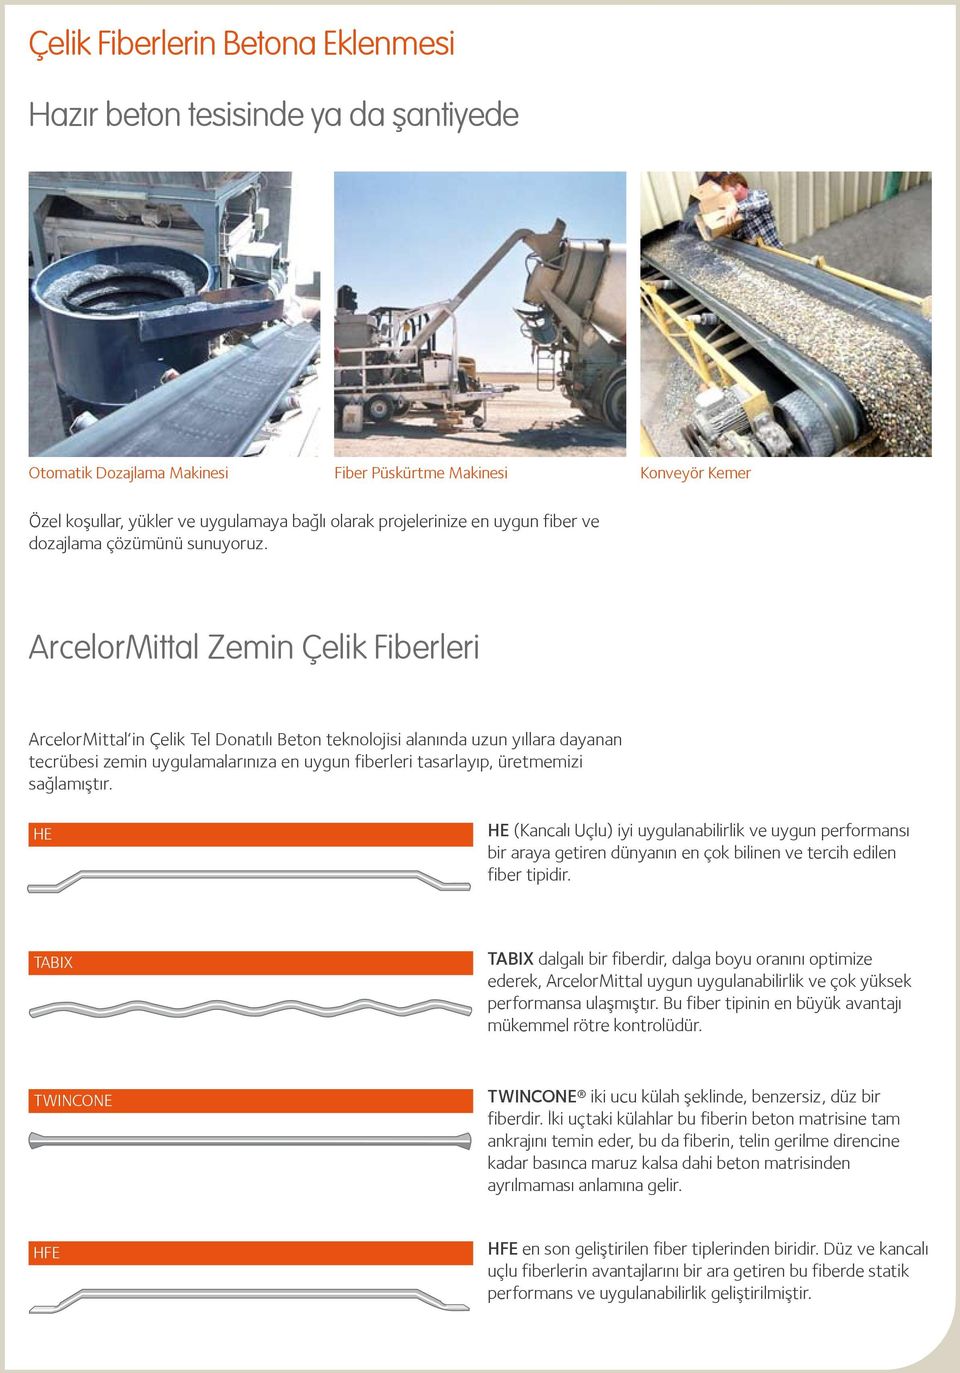 ArcelorMittal Zemin Çelik Fiberleri ArcelorMittal in Çelik Tel Donatılı Beton teknolojisi alanında uzun yıllara dayanan tecrübesi zemin uygulamalarınıza en uygun fiberleri tasarlayıp, üretmemizi